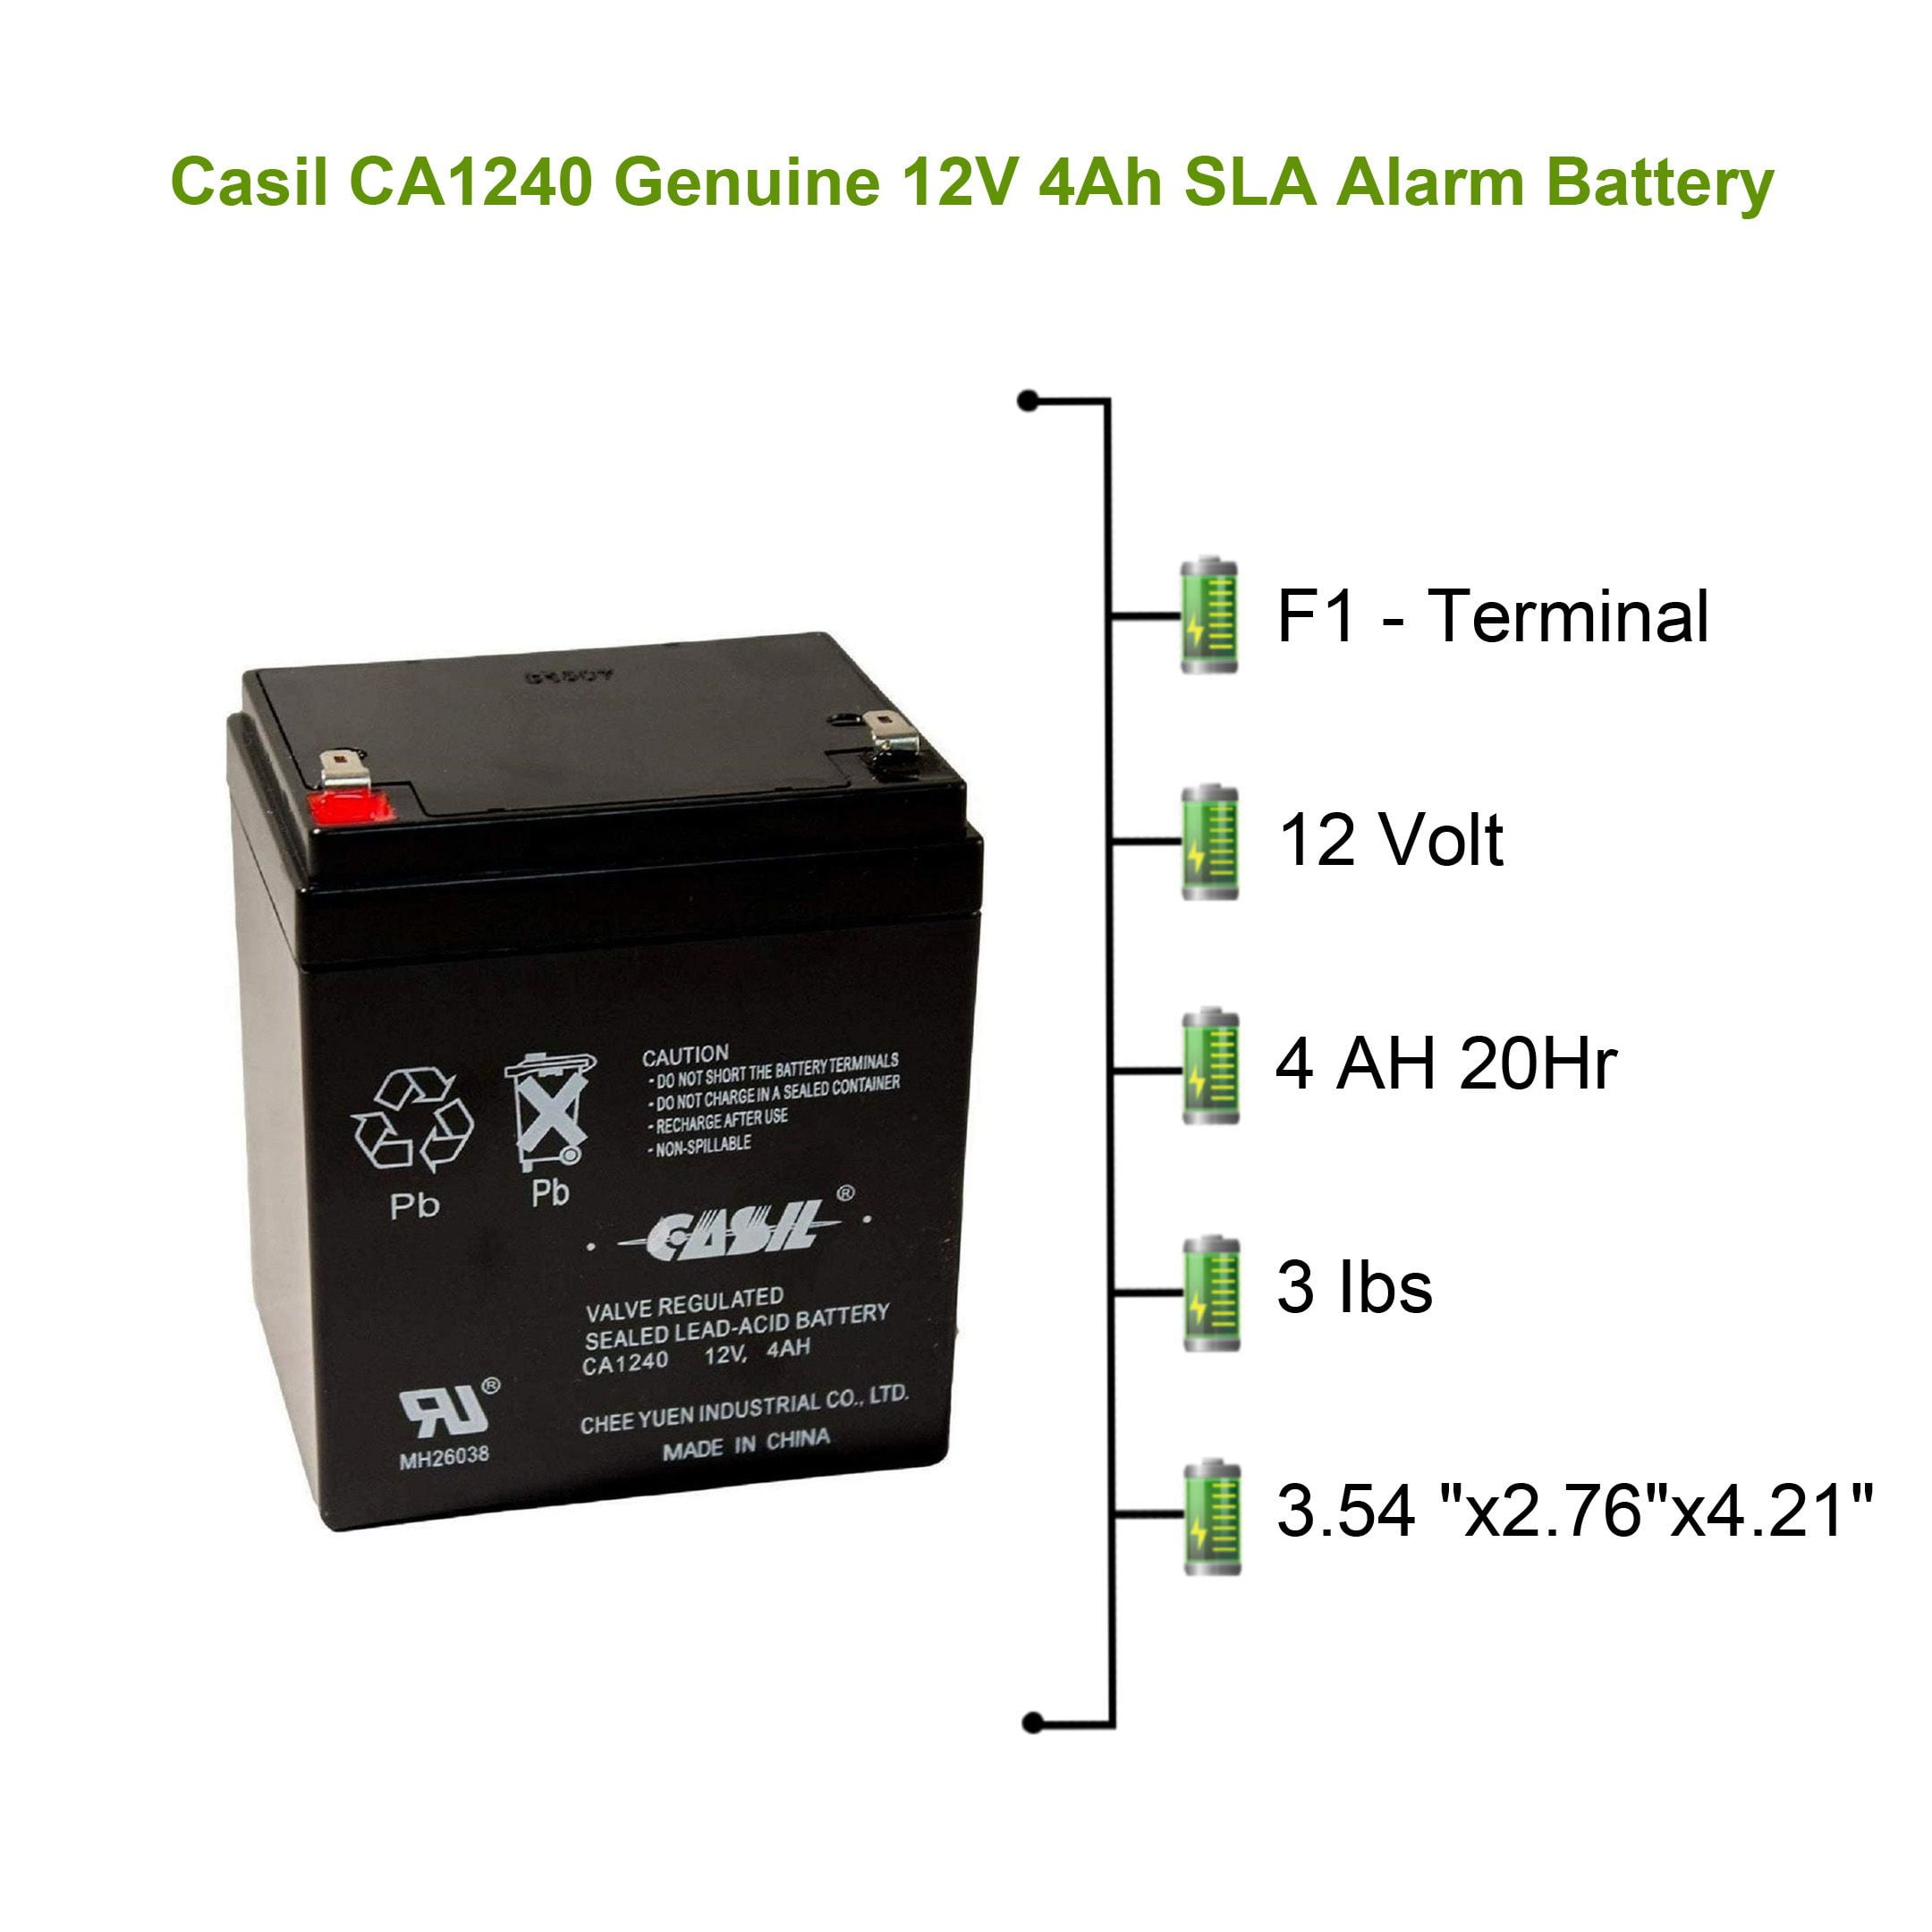 Ce Produit est Un Article de Remplacement de la Marque AJC® Batterie Casil Chee Yuen Industrial CA1240 12V 5Ah Acide scellé de Plomb 